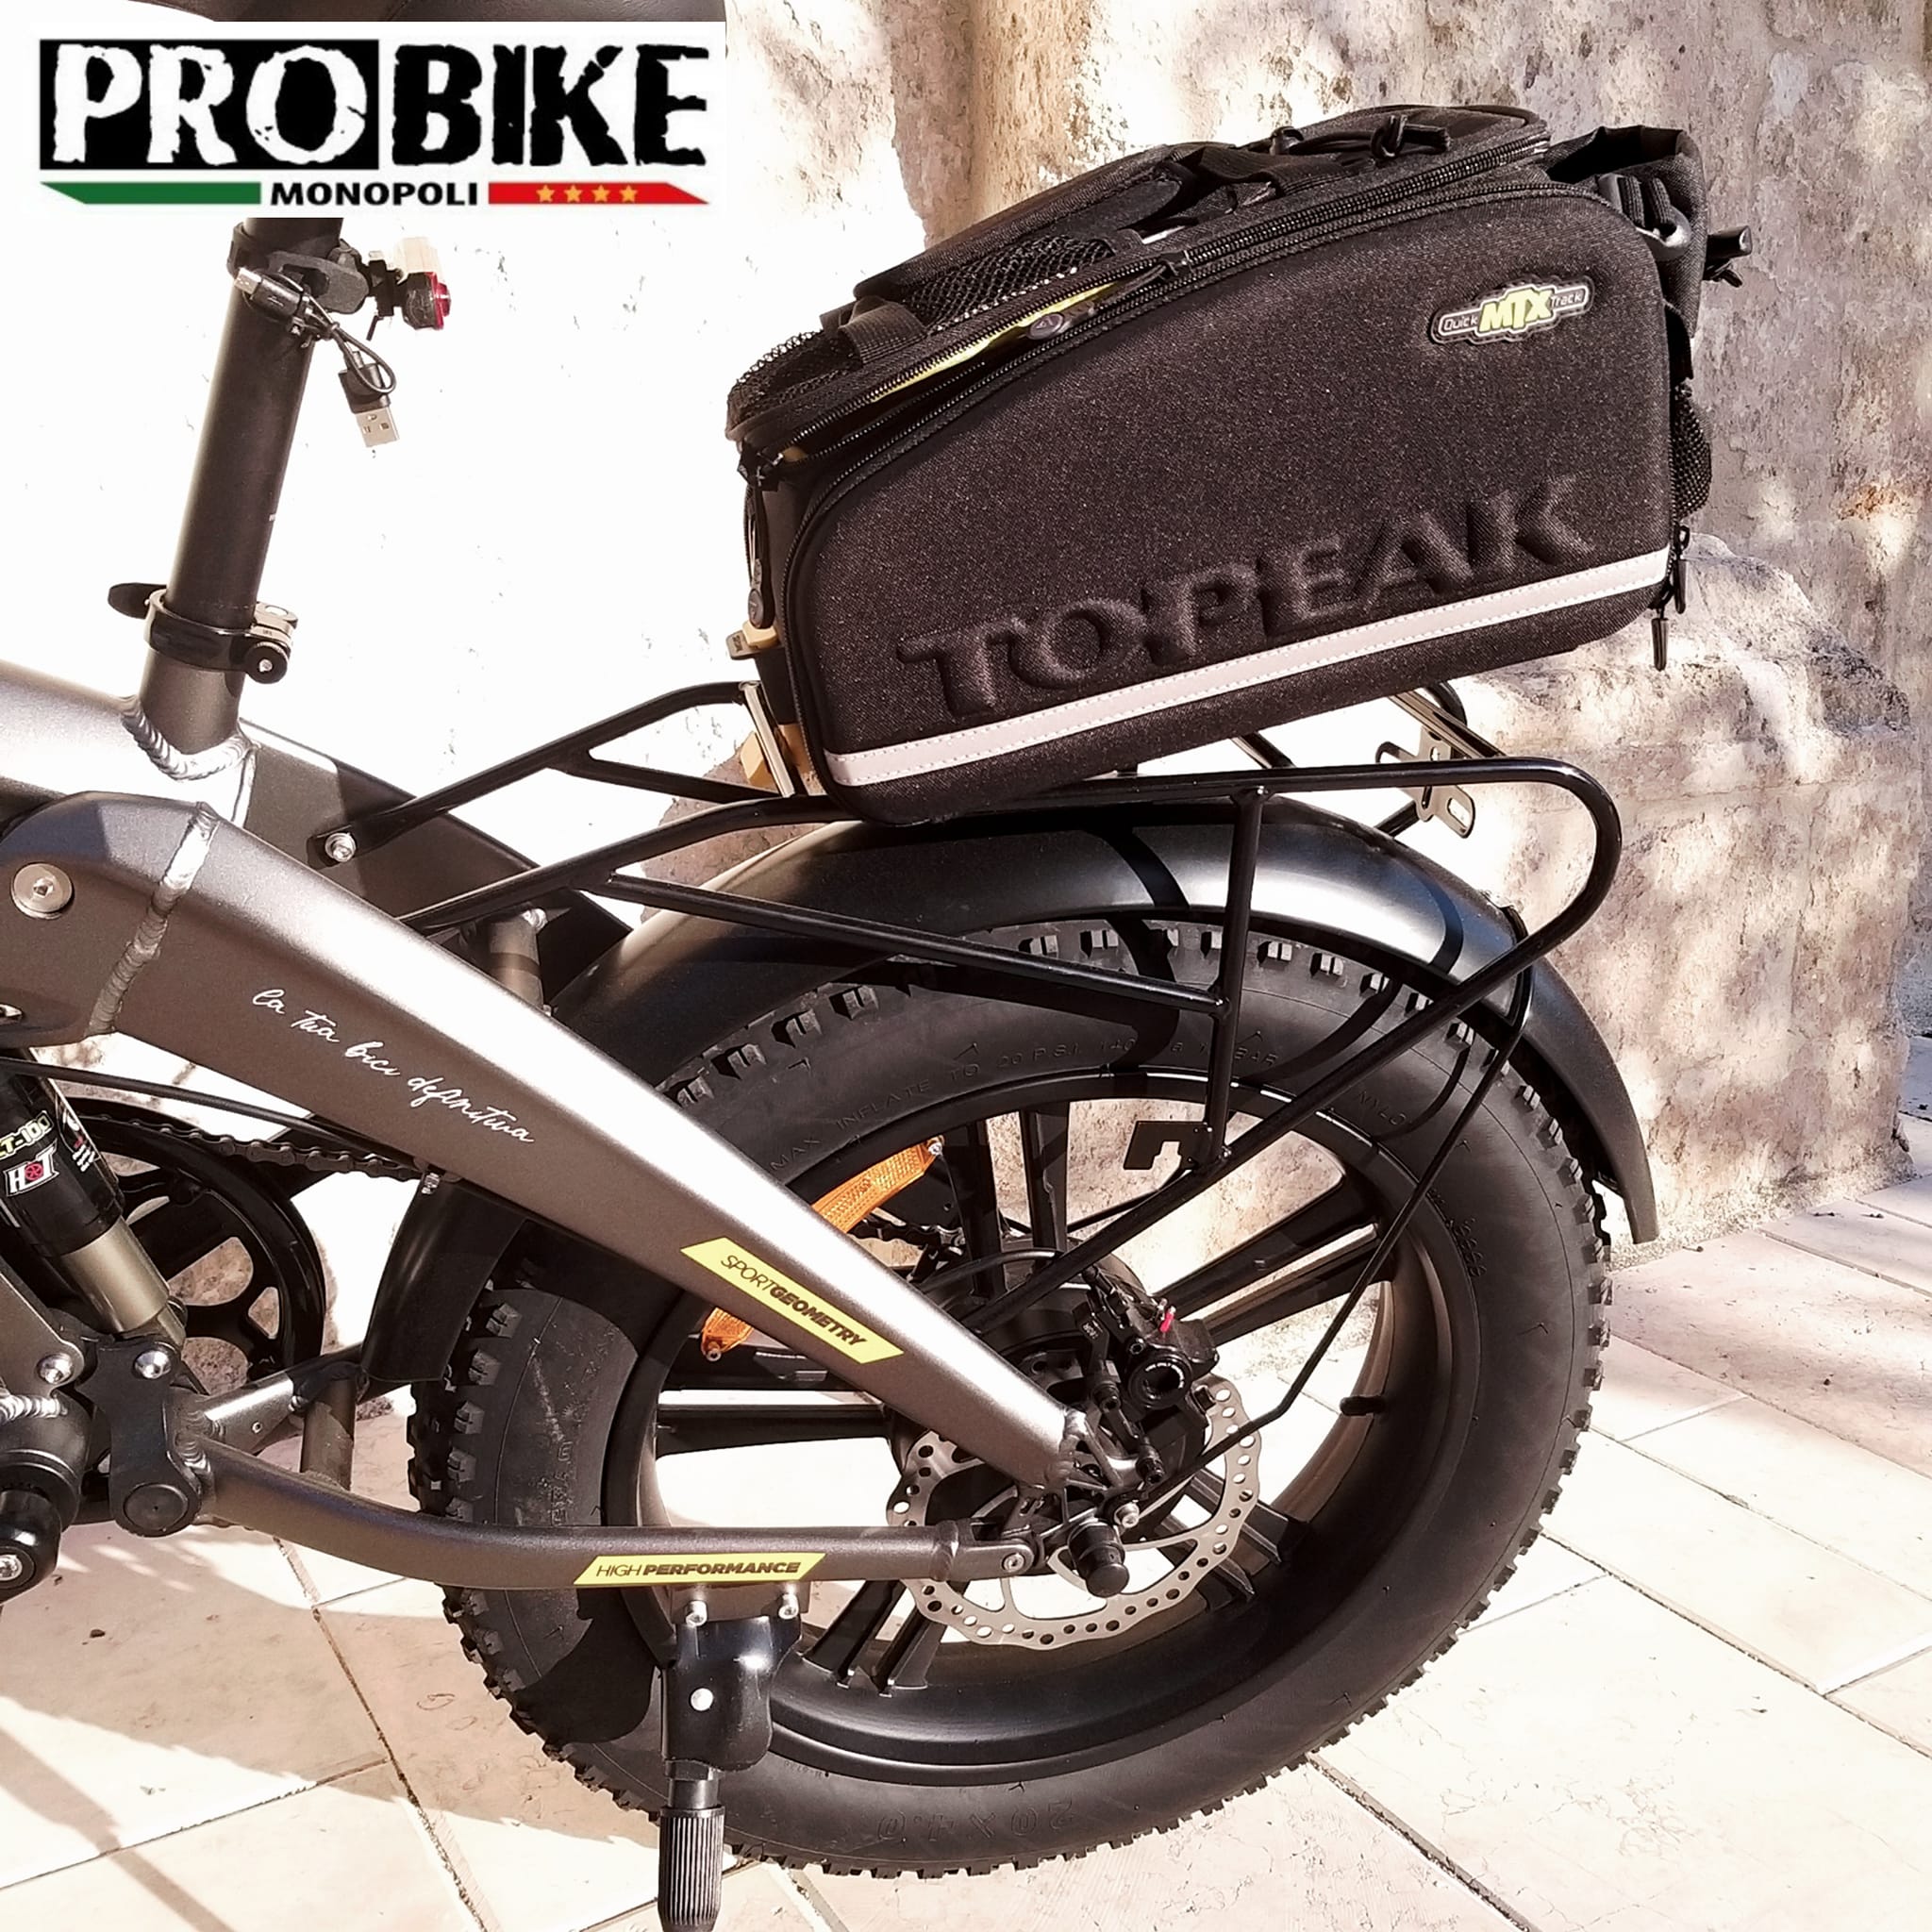 Accessori E-bike  Scelta e consigli tecnici su Probikeshop